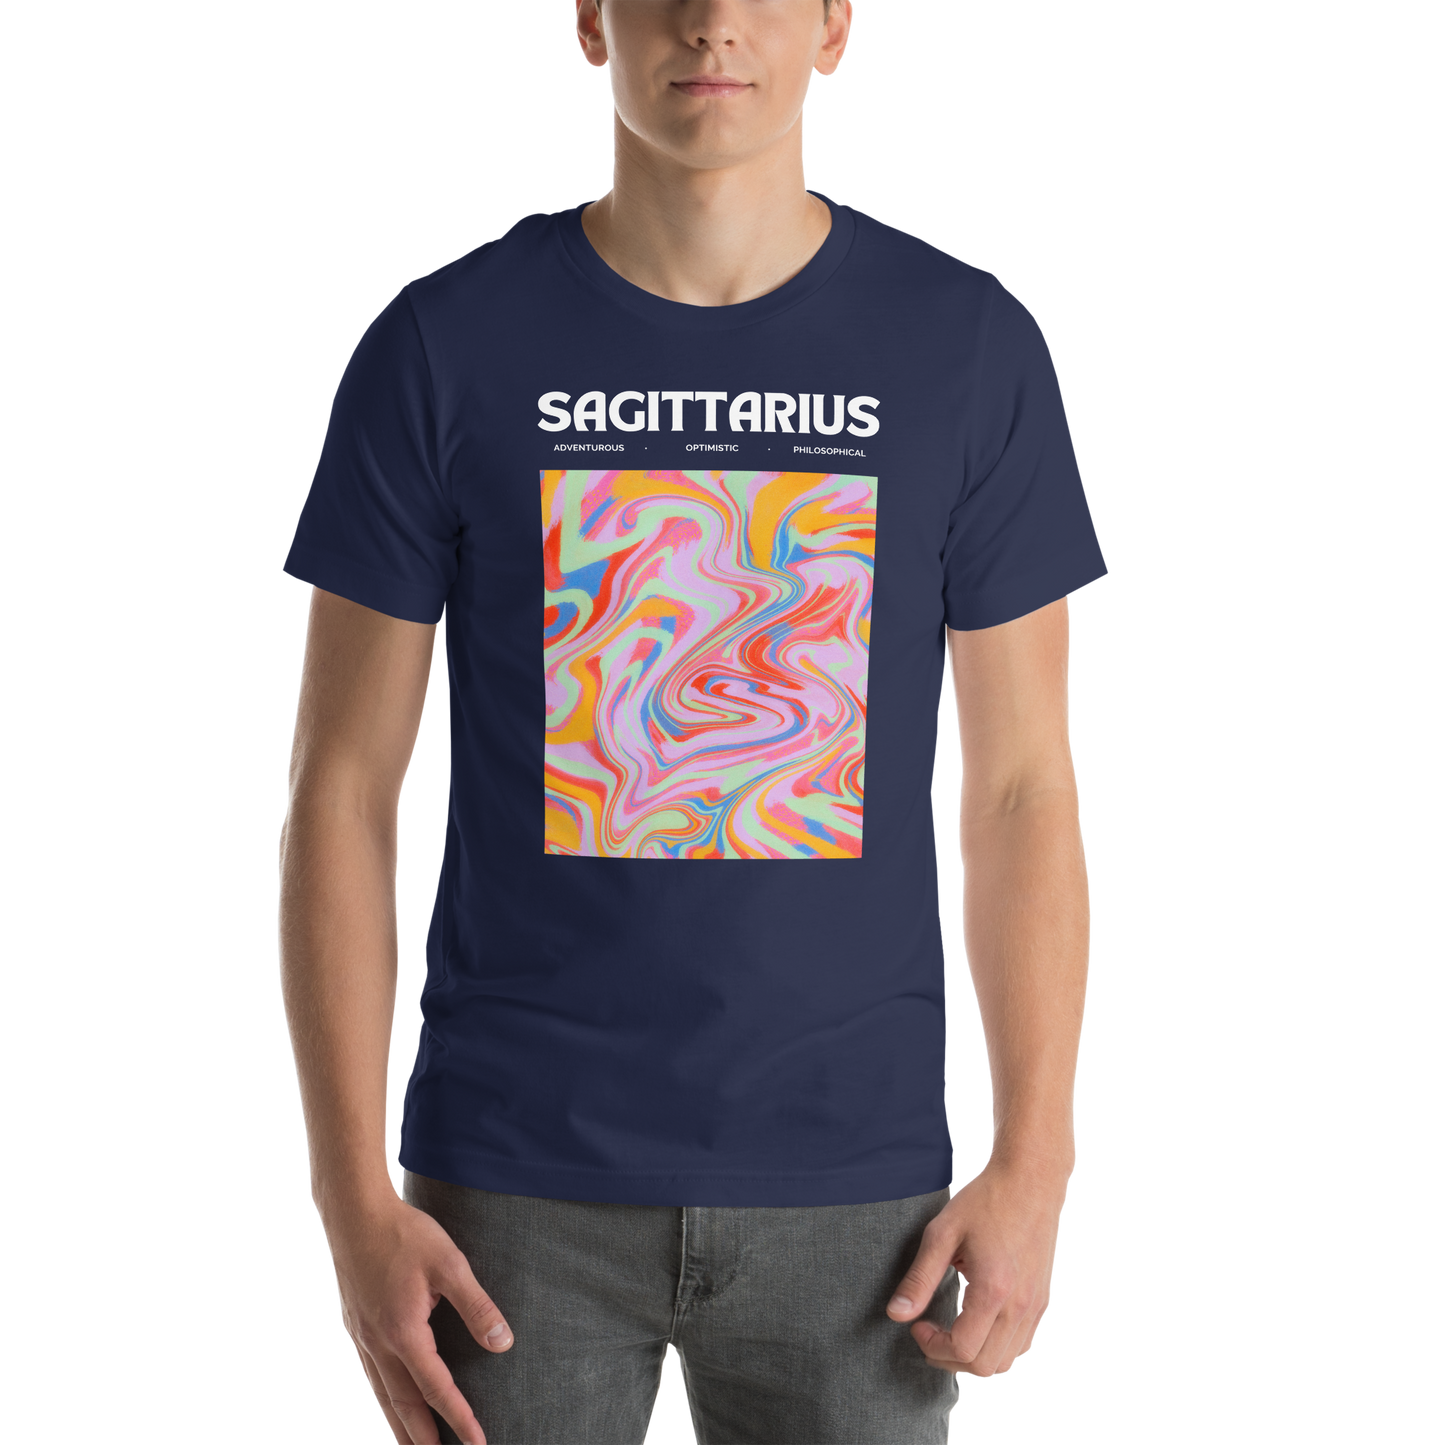 Sagittarius Premium T-Shirt